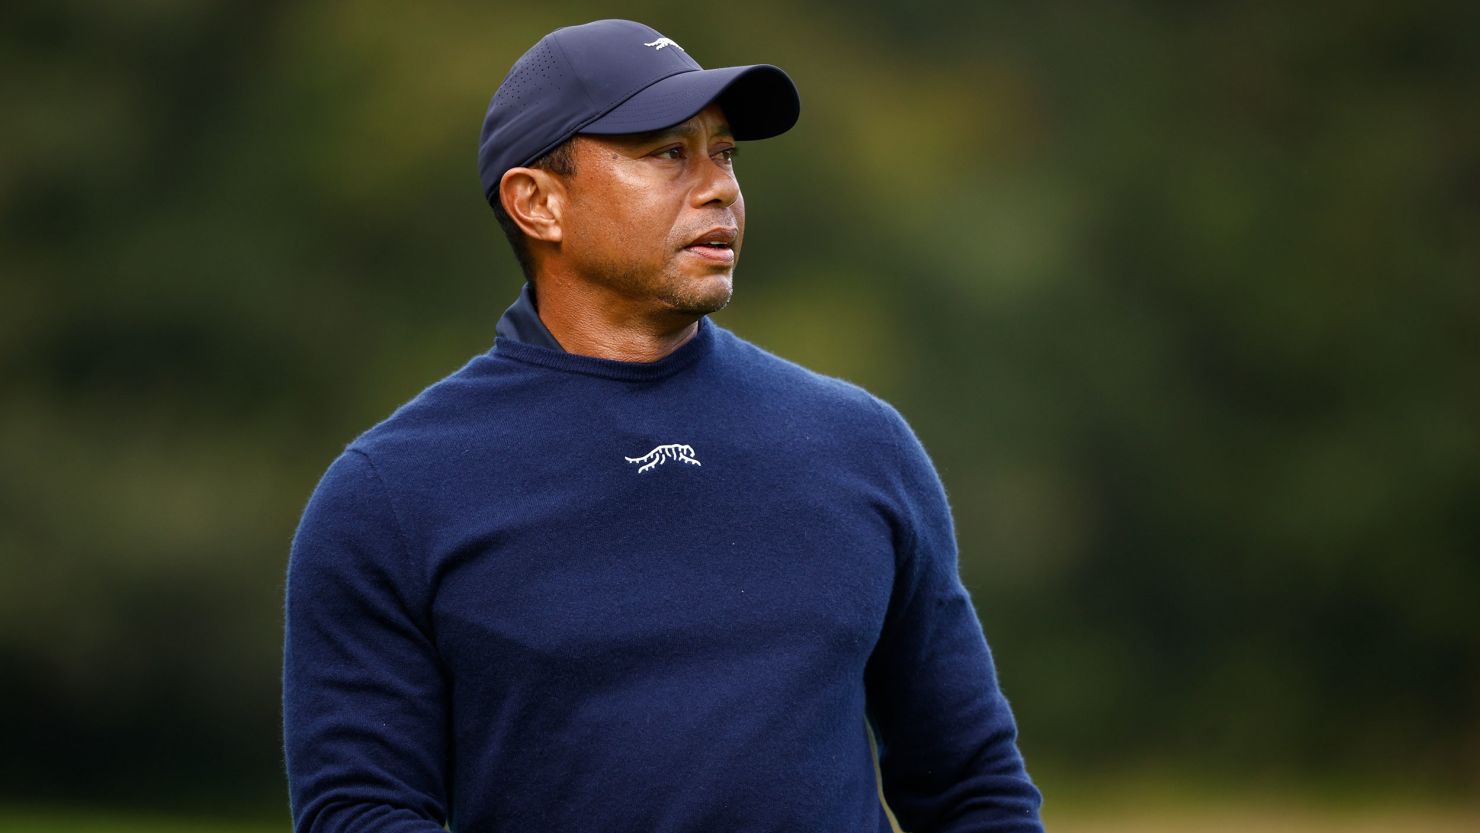 Tiger Woods hættir snemma í Genesis Invitational vegna veikinda